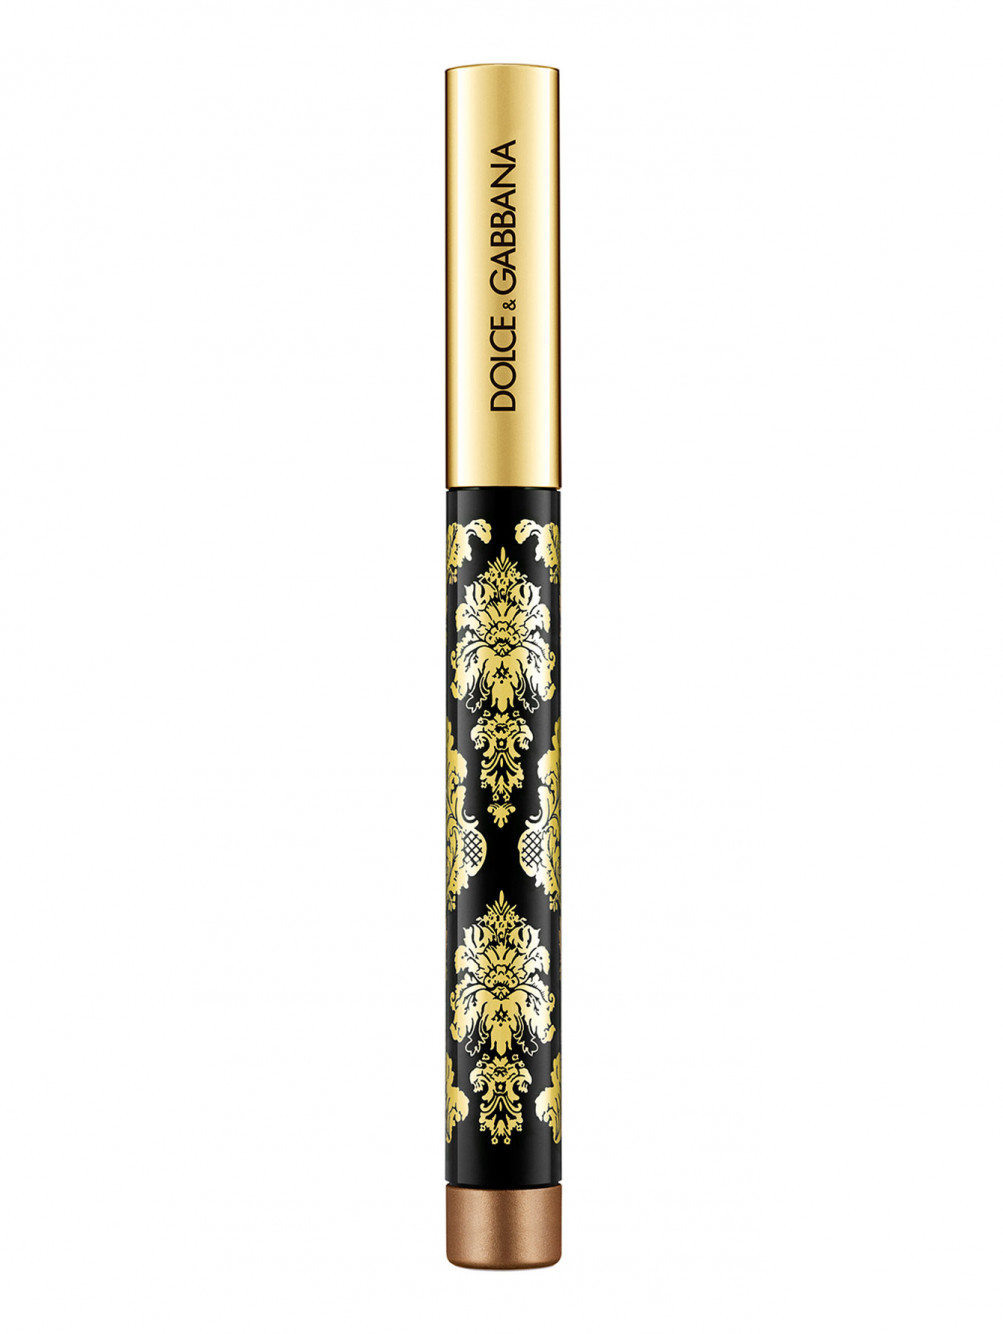 Кремовые тени-карандаш для глаз Intenseyes, 4 Bronze, 1,4 мл - Обтравка2